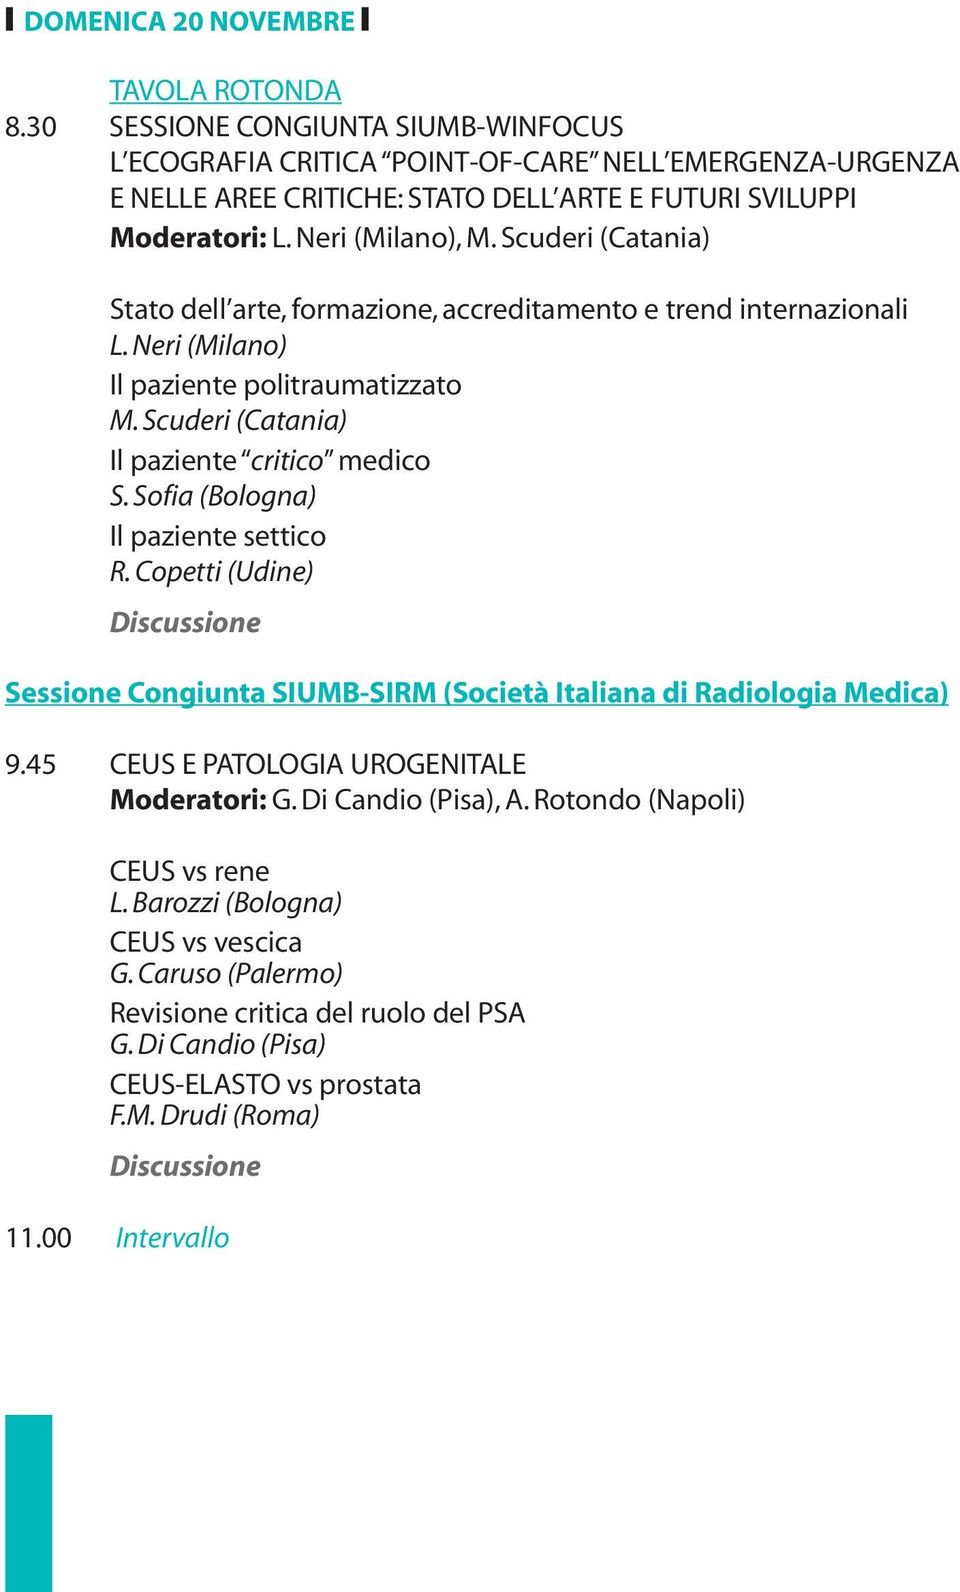 Scuderi (Catania) Il paziente critico medico S. Sofia (Bologna) Il paziente settico R. Copetti (Udine) Sessione Congiunta SIUMB-SIRM (Società Italiana di Radiologia Medica) 9.